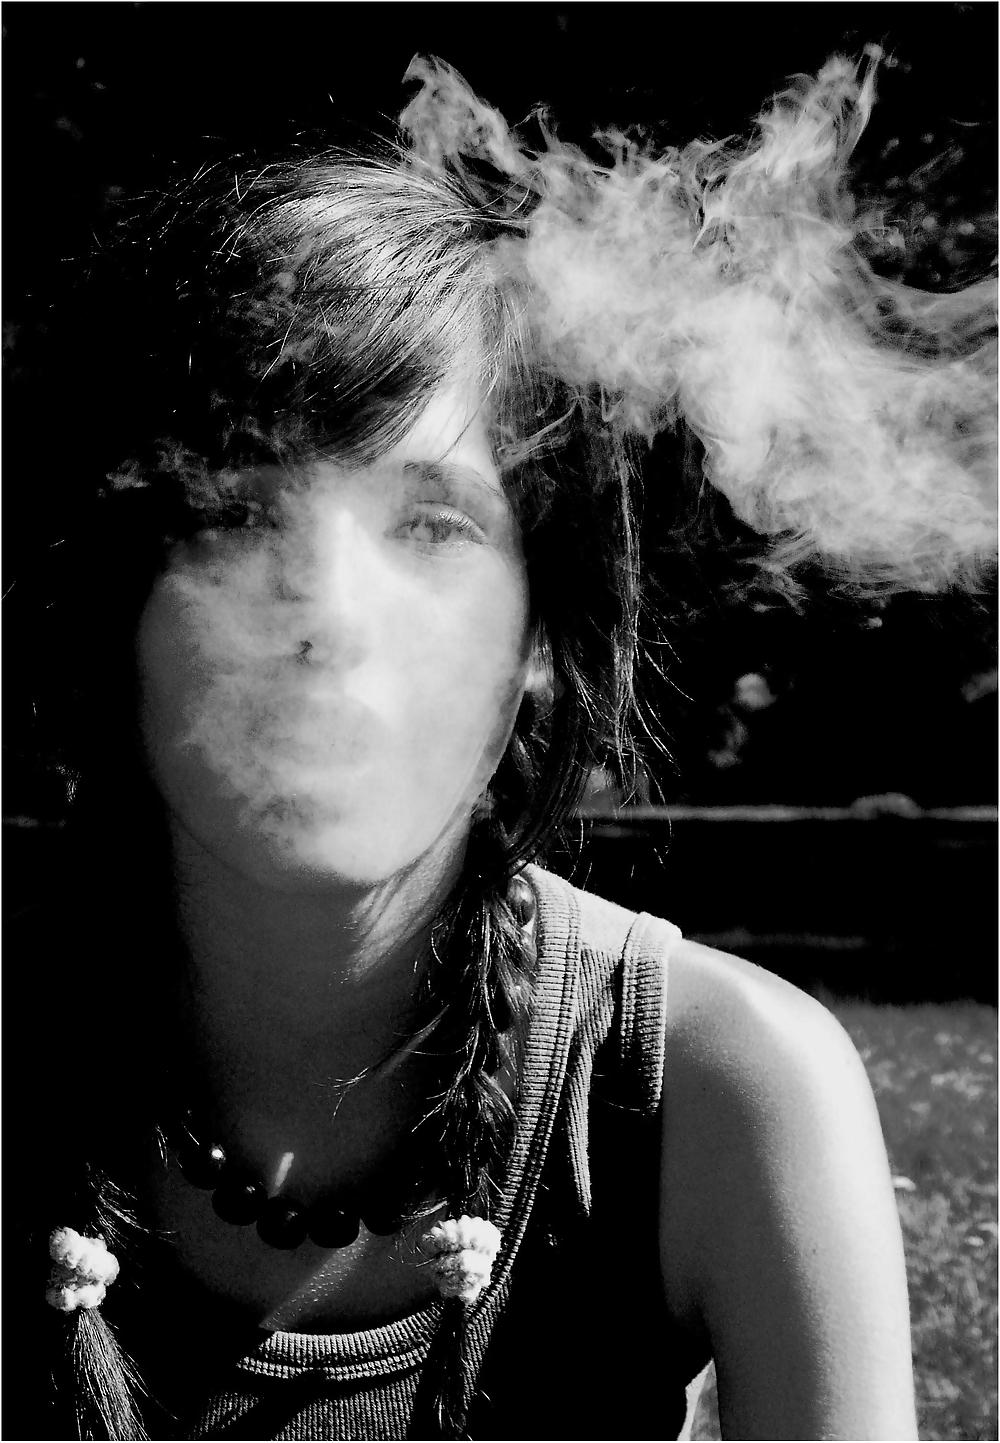 Smoking girlx rockx #402334